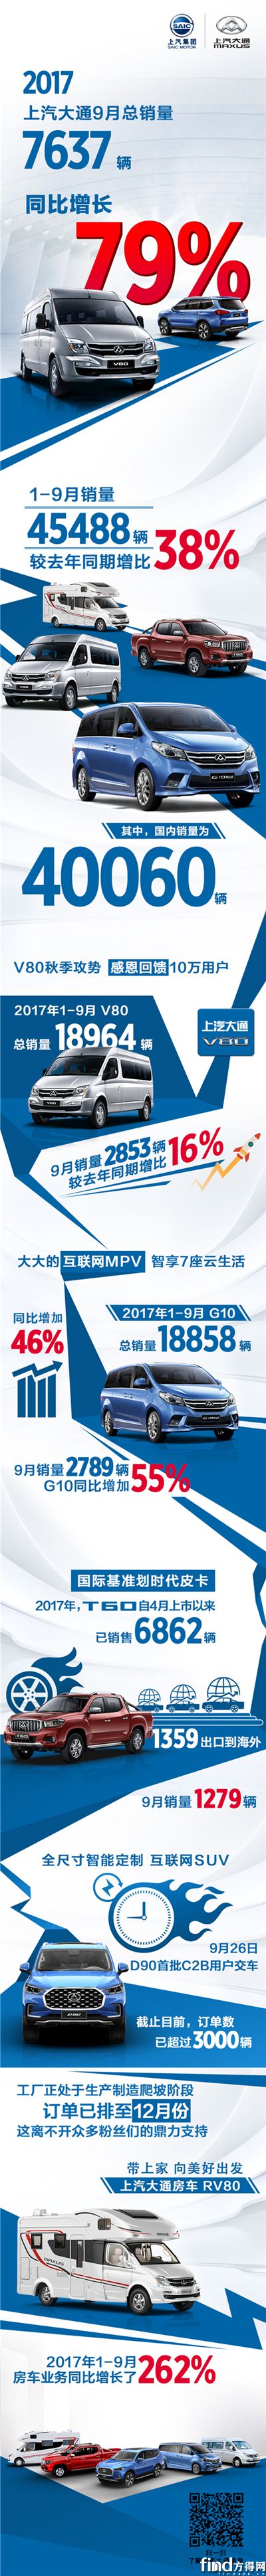 上汽大通2017年9月销量表现长图